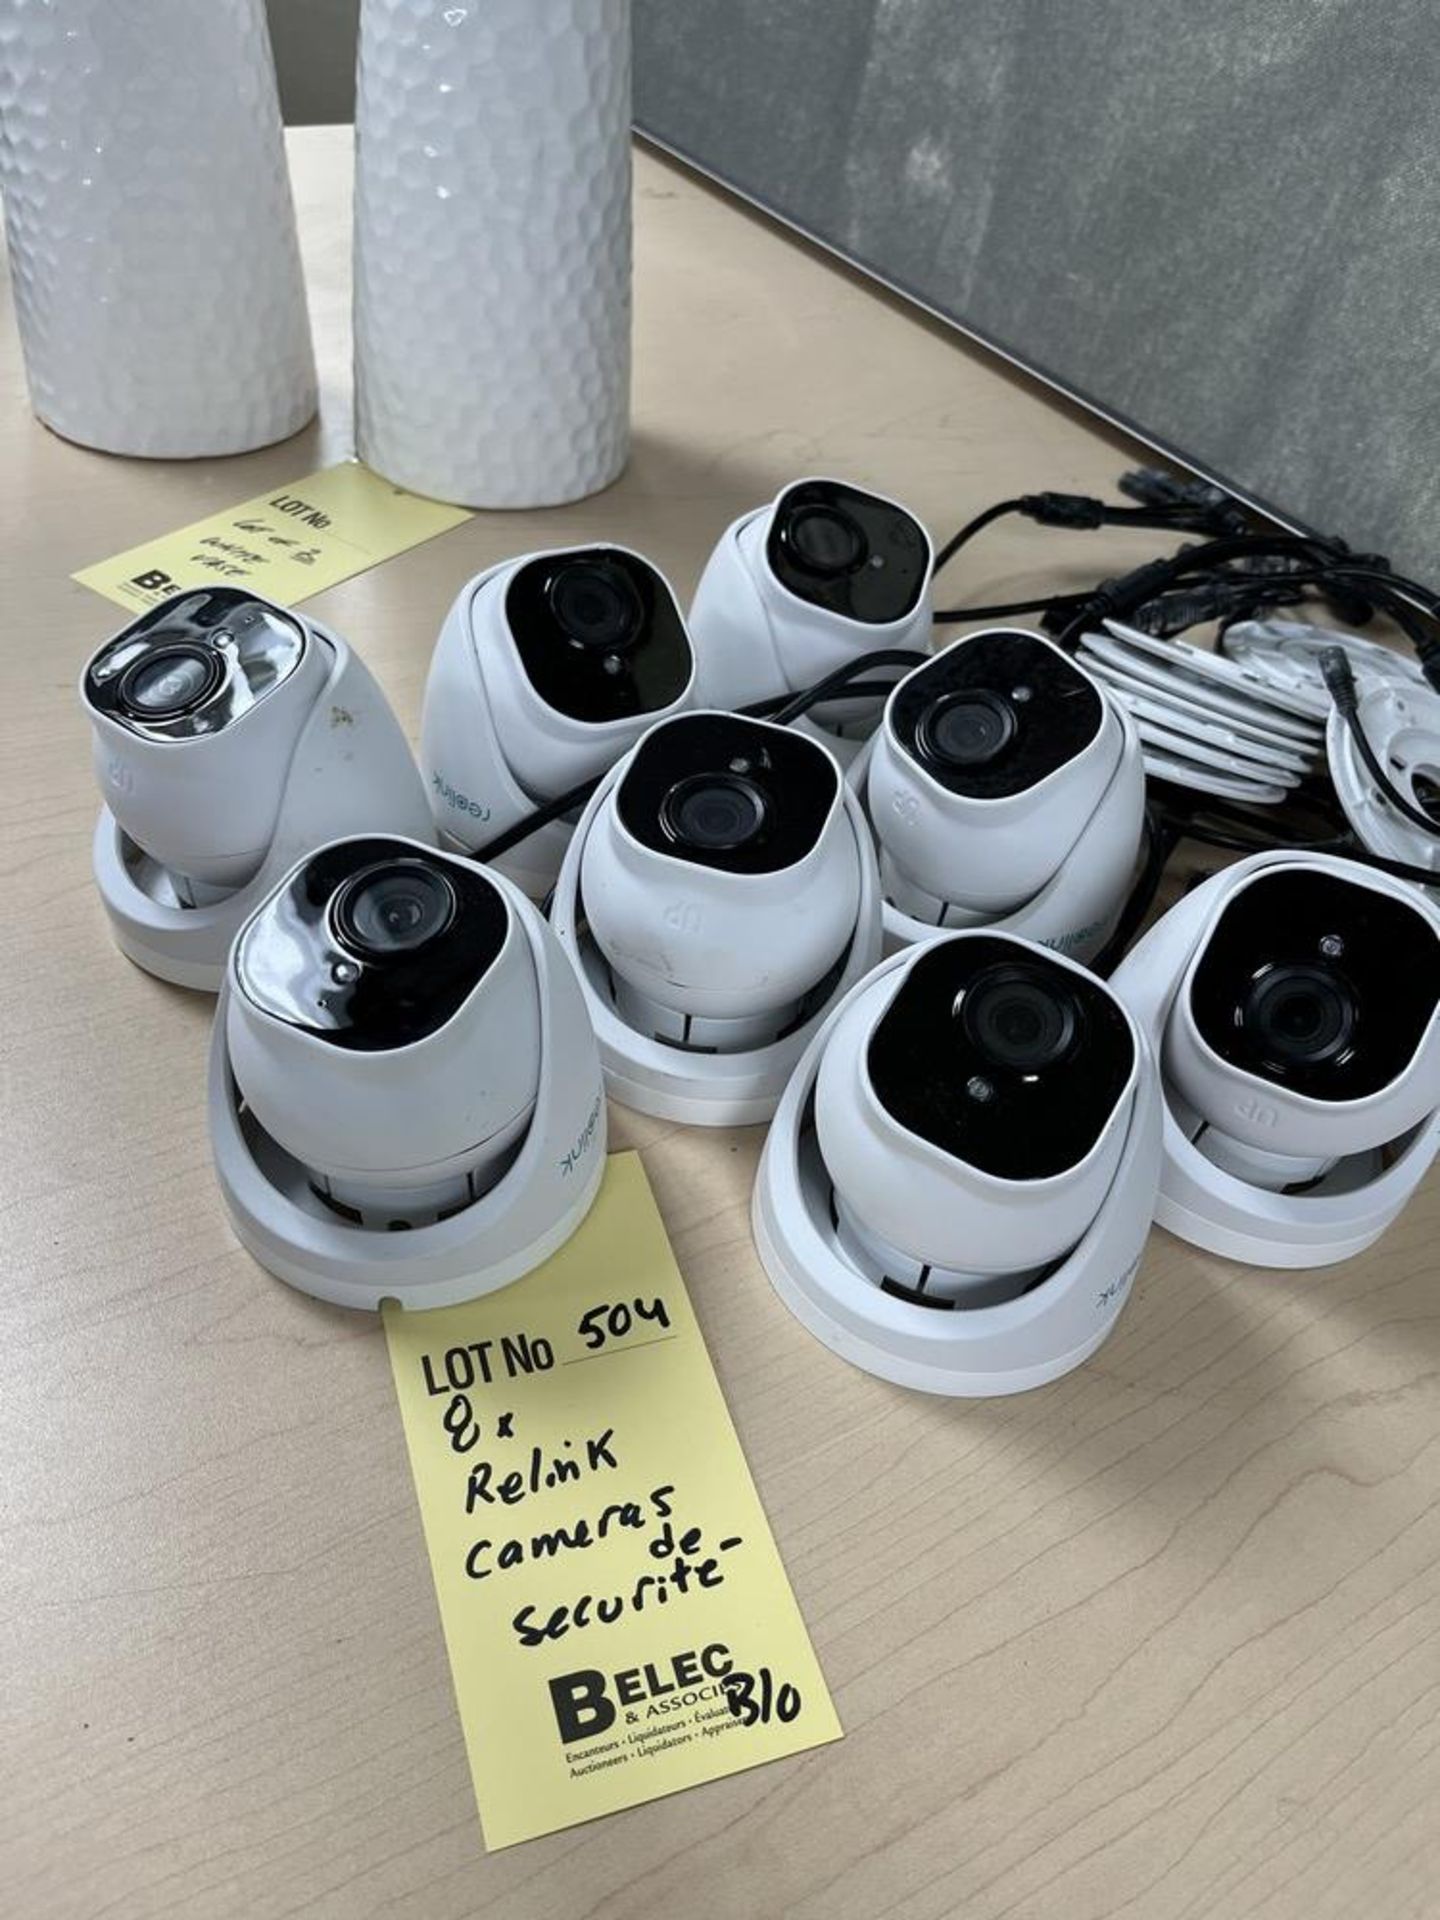 8 x RELINK cameras de securité - QUANtitÉ X PRIX MISÉ